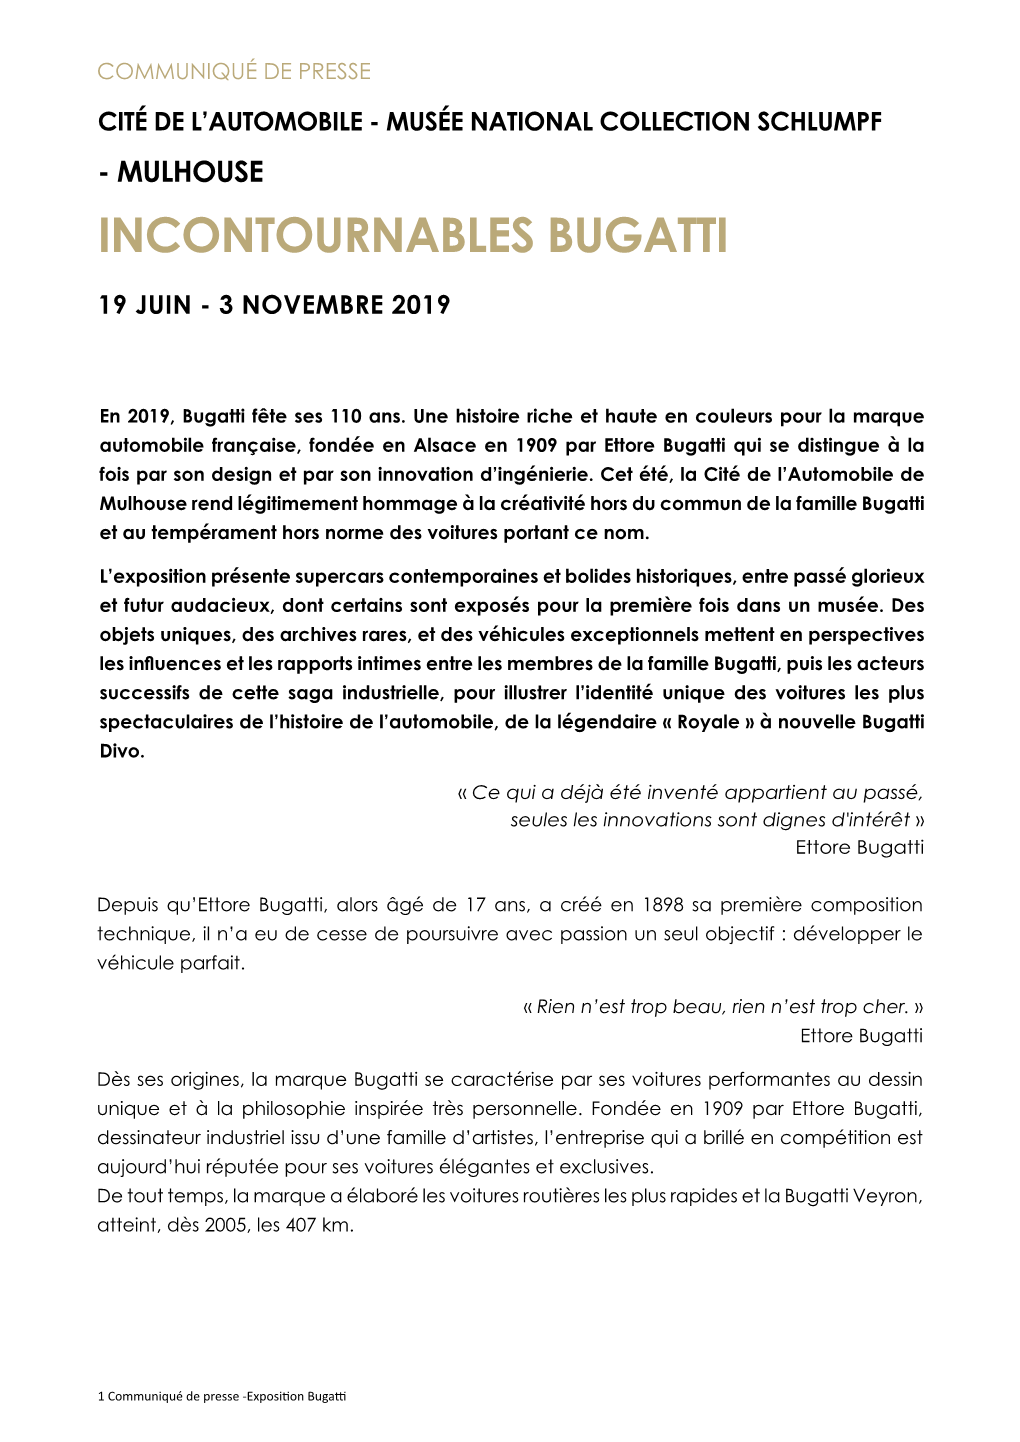 Incontournables Bugatti